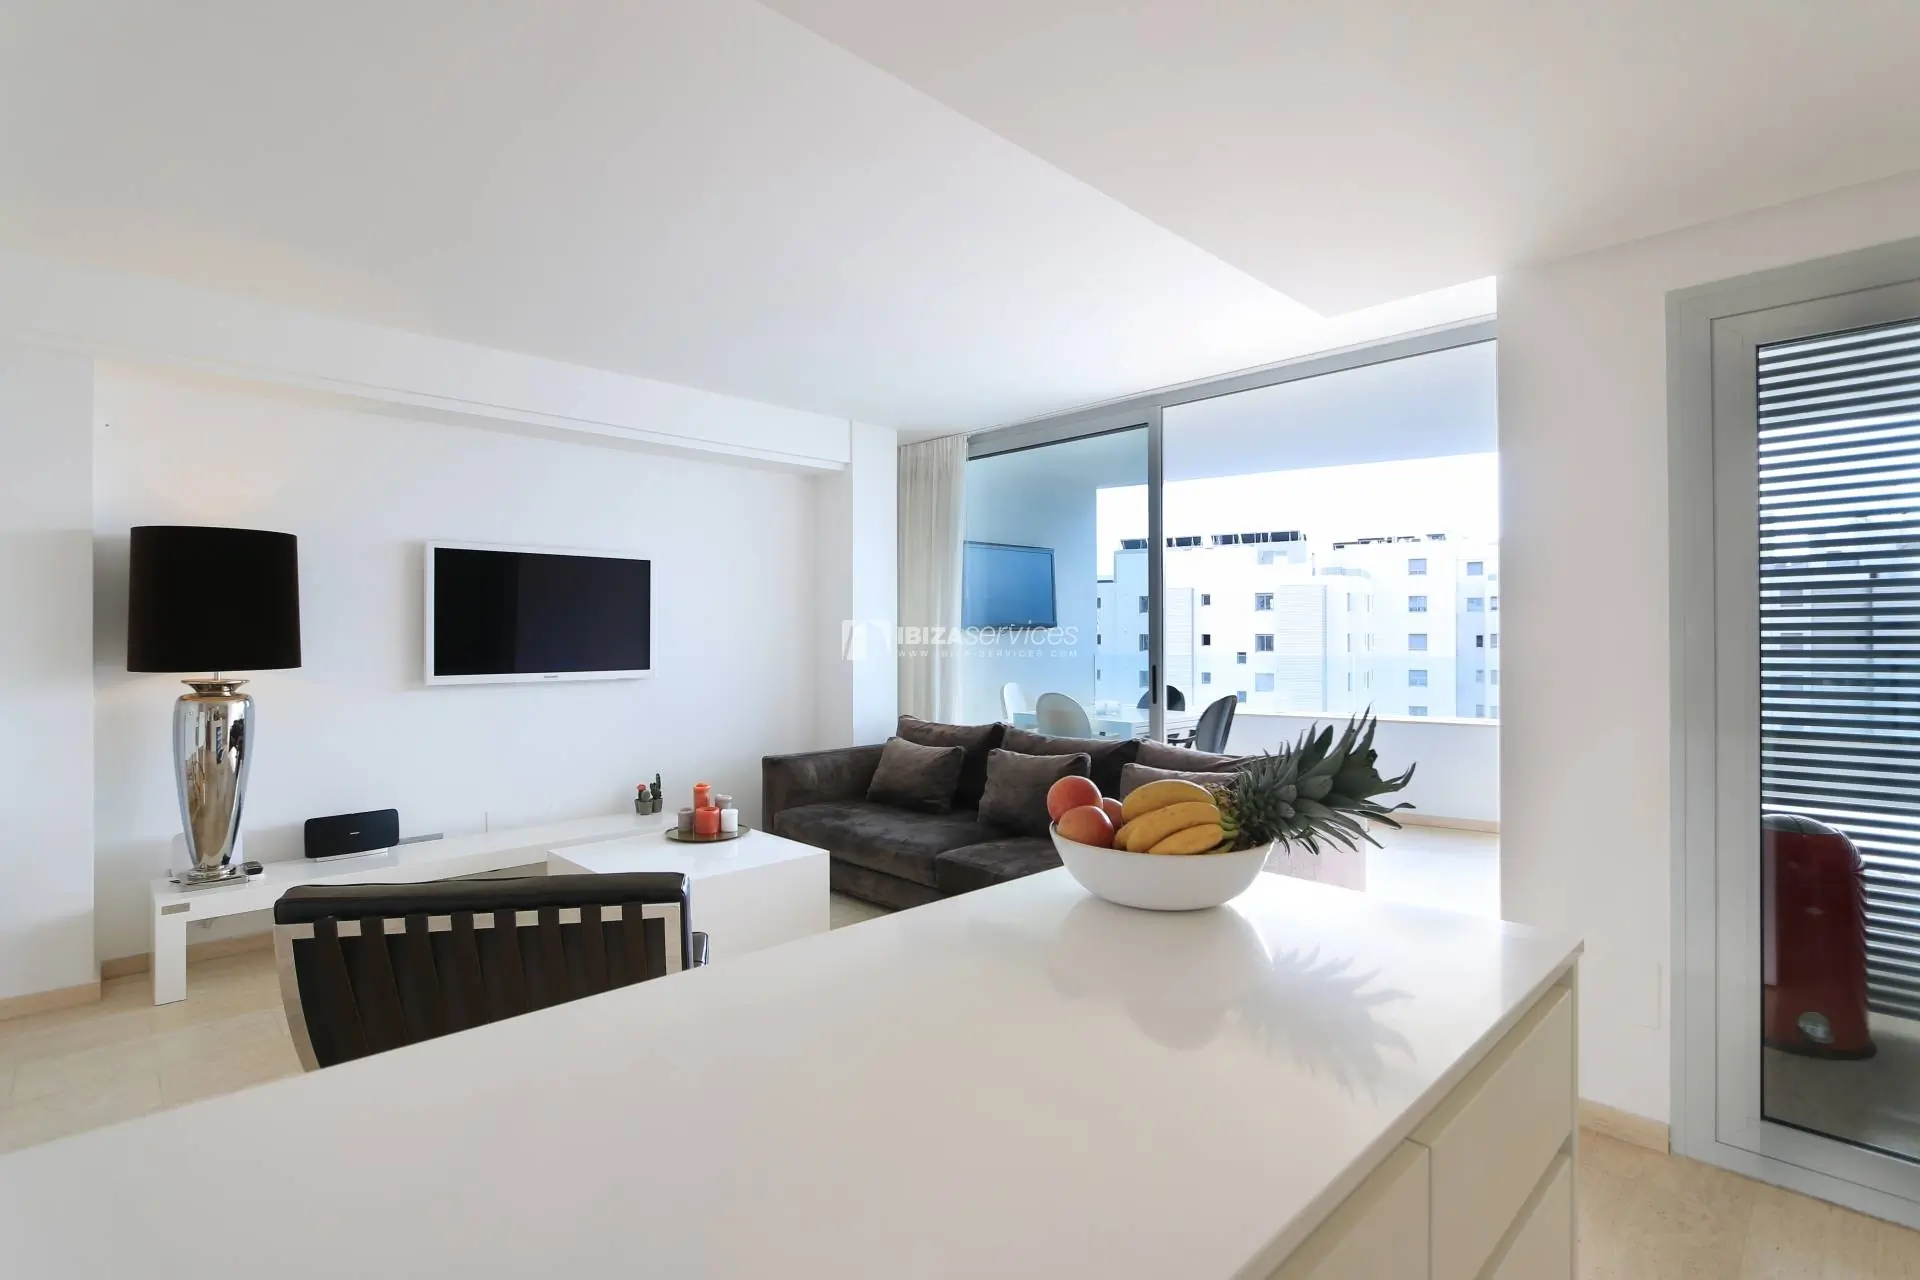 Comprar un apartamento moderno y luminoso de 3 dormitorios Botafoch